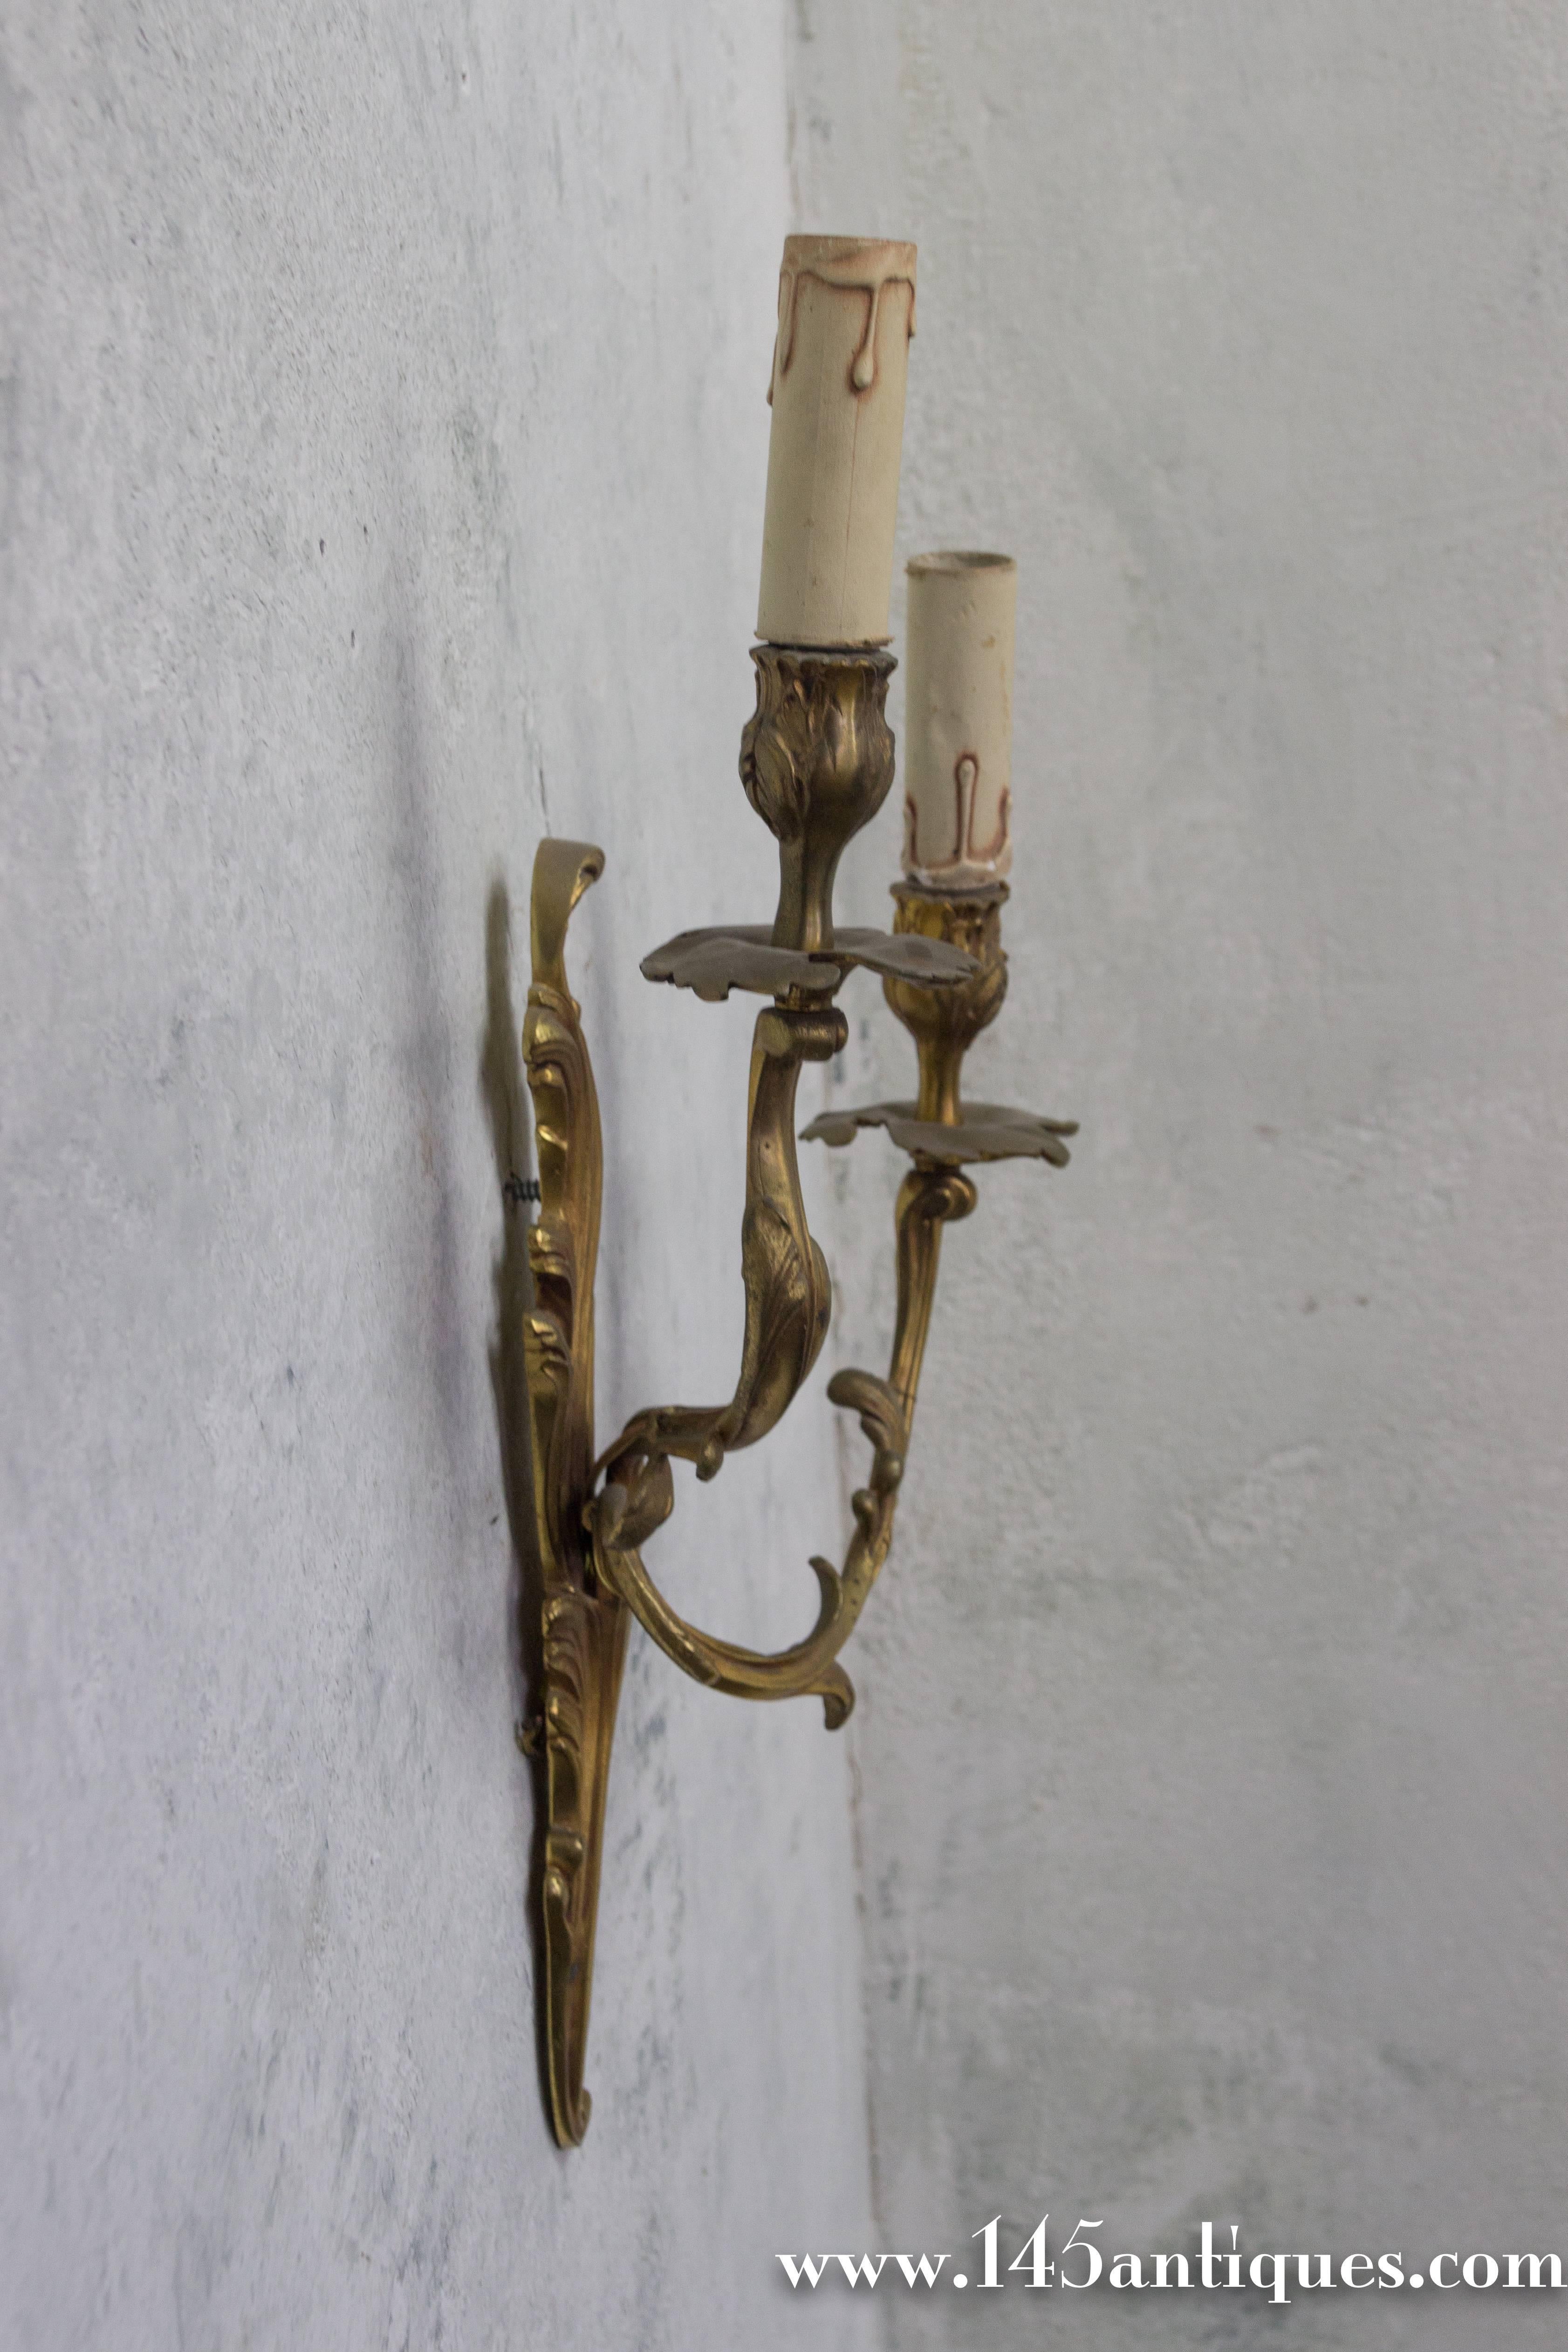 Élégante paire d'appliques françaises des années 1920 en bronze doré à deux bras de style Louis XV. Très bon état vintage, mais devra être câblé.

Réf. : LS0408-09

Dimensions : 19 